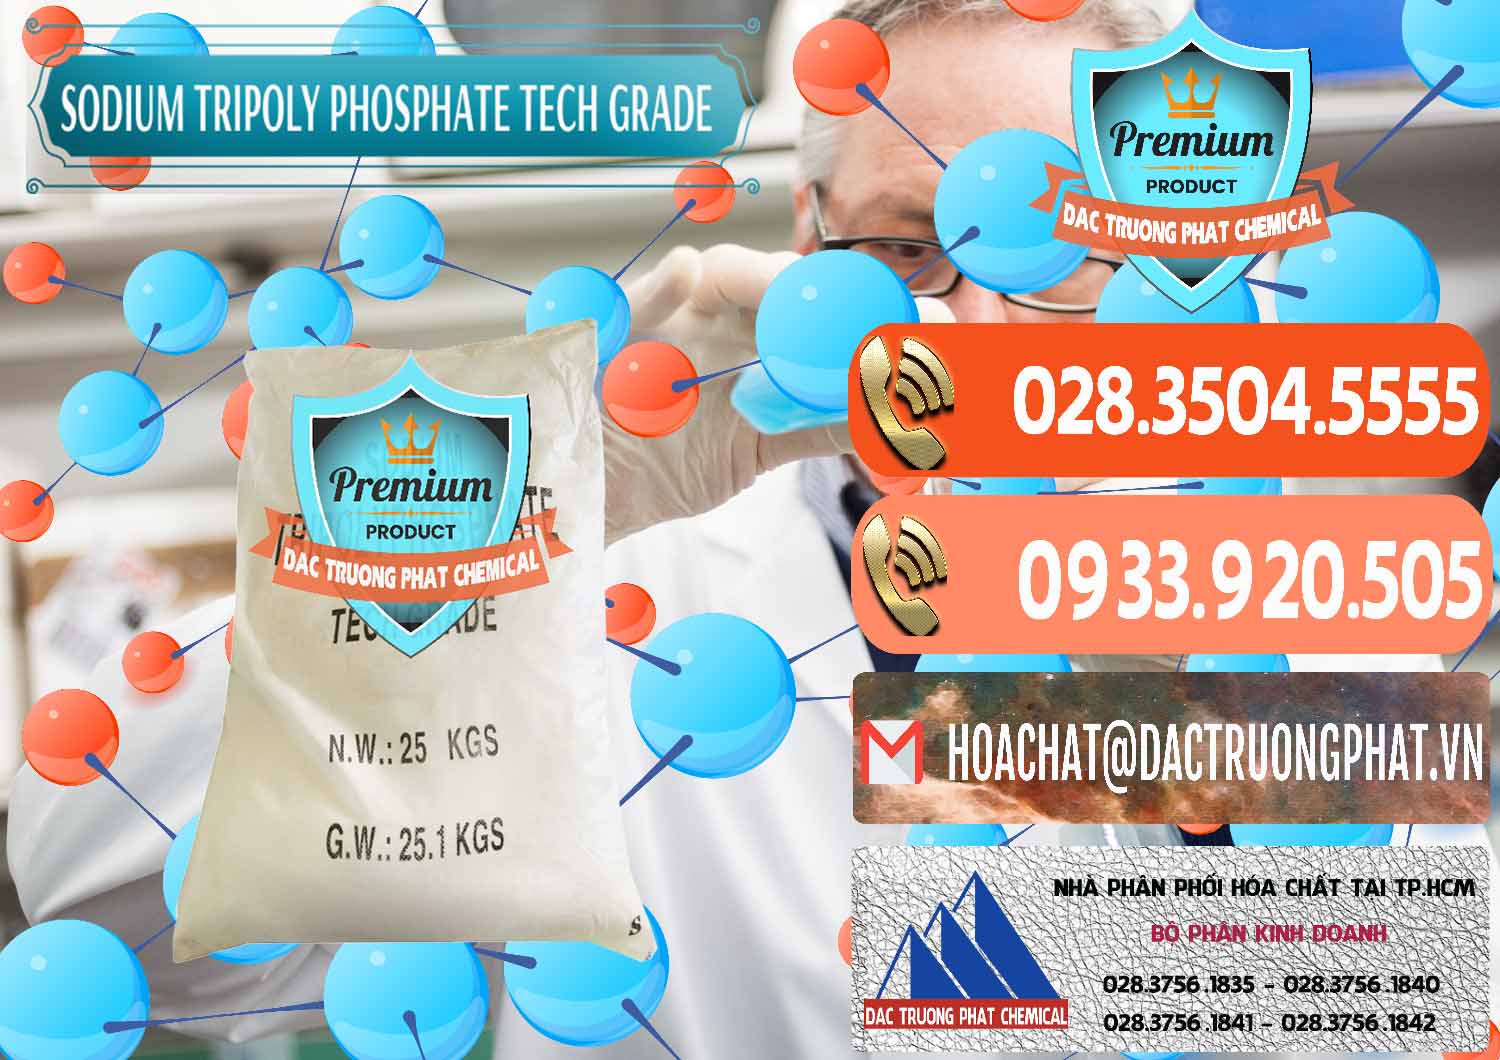 Nơi bán và cung cấp Sodium Tripoly Phosphate - STPP Tech Grade Trung Quốc China - 0453 - Đơn vị cung cấp & nhập khẩu hóa chất tại TP.HCM - hoachatmientay.com